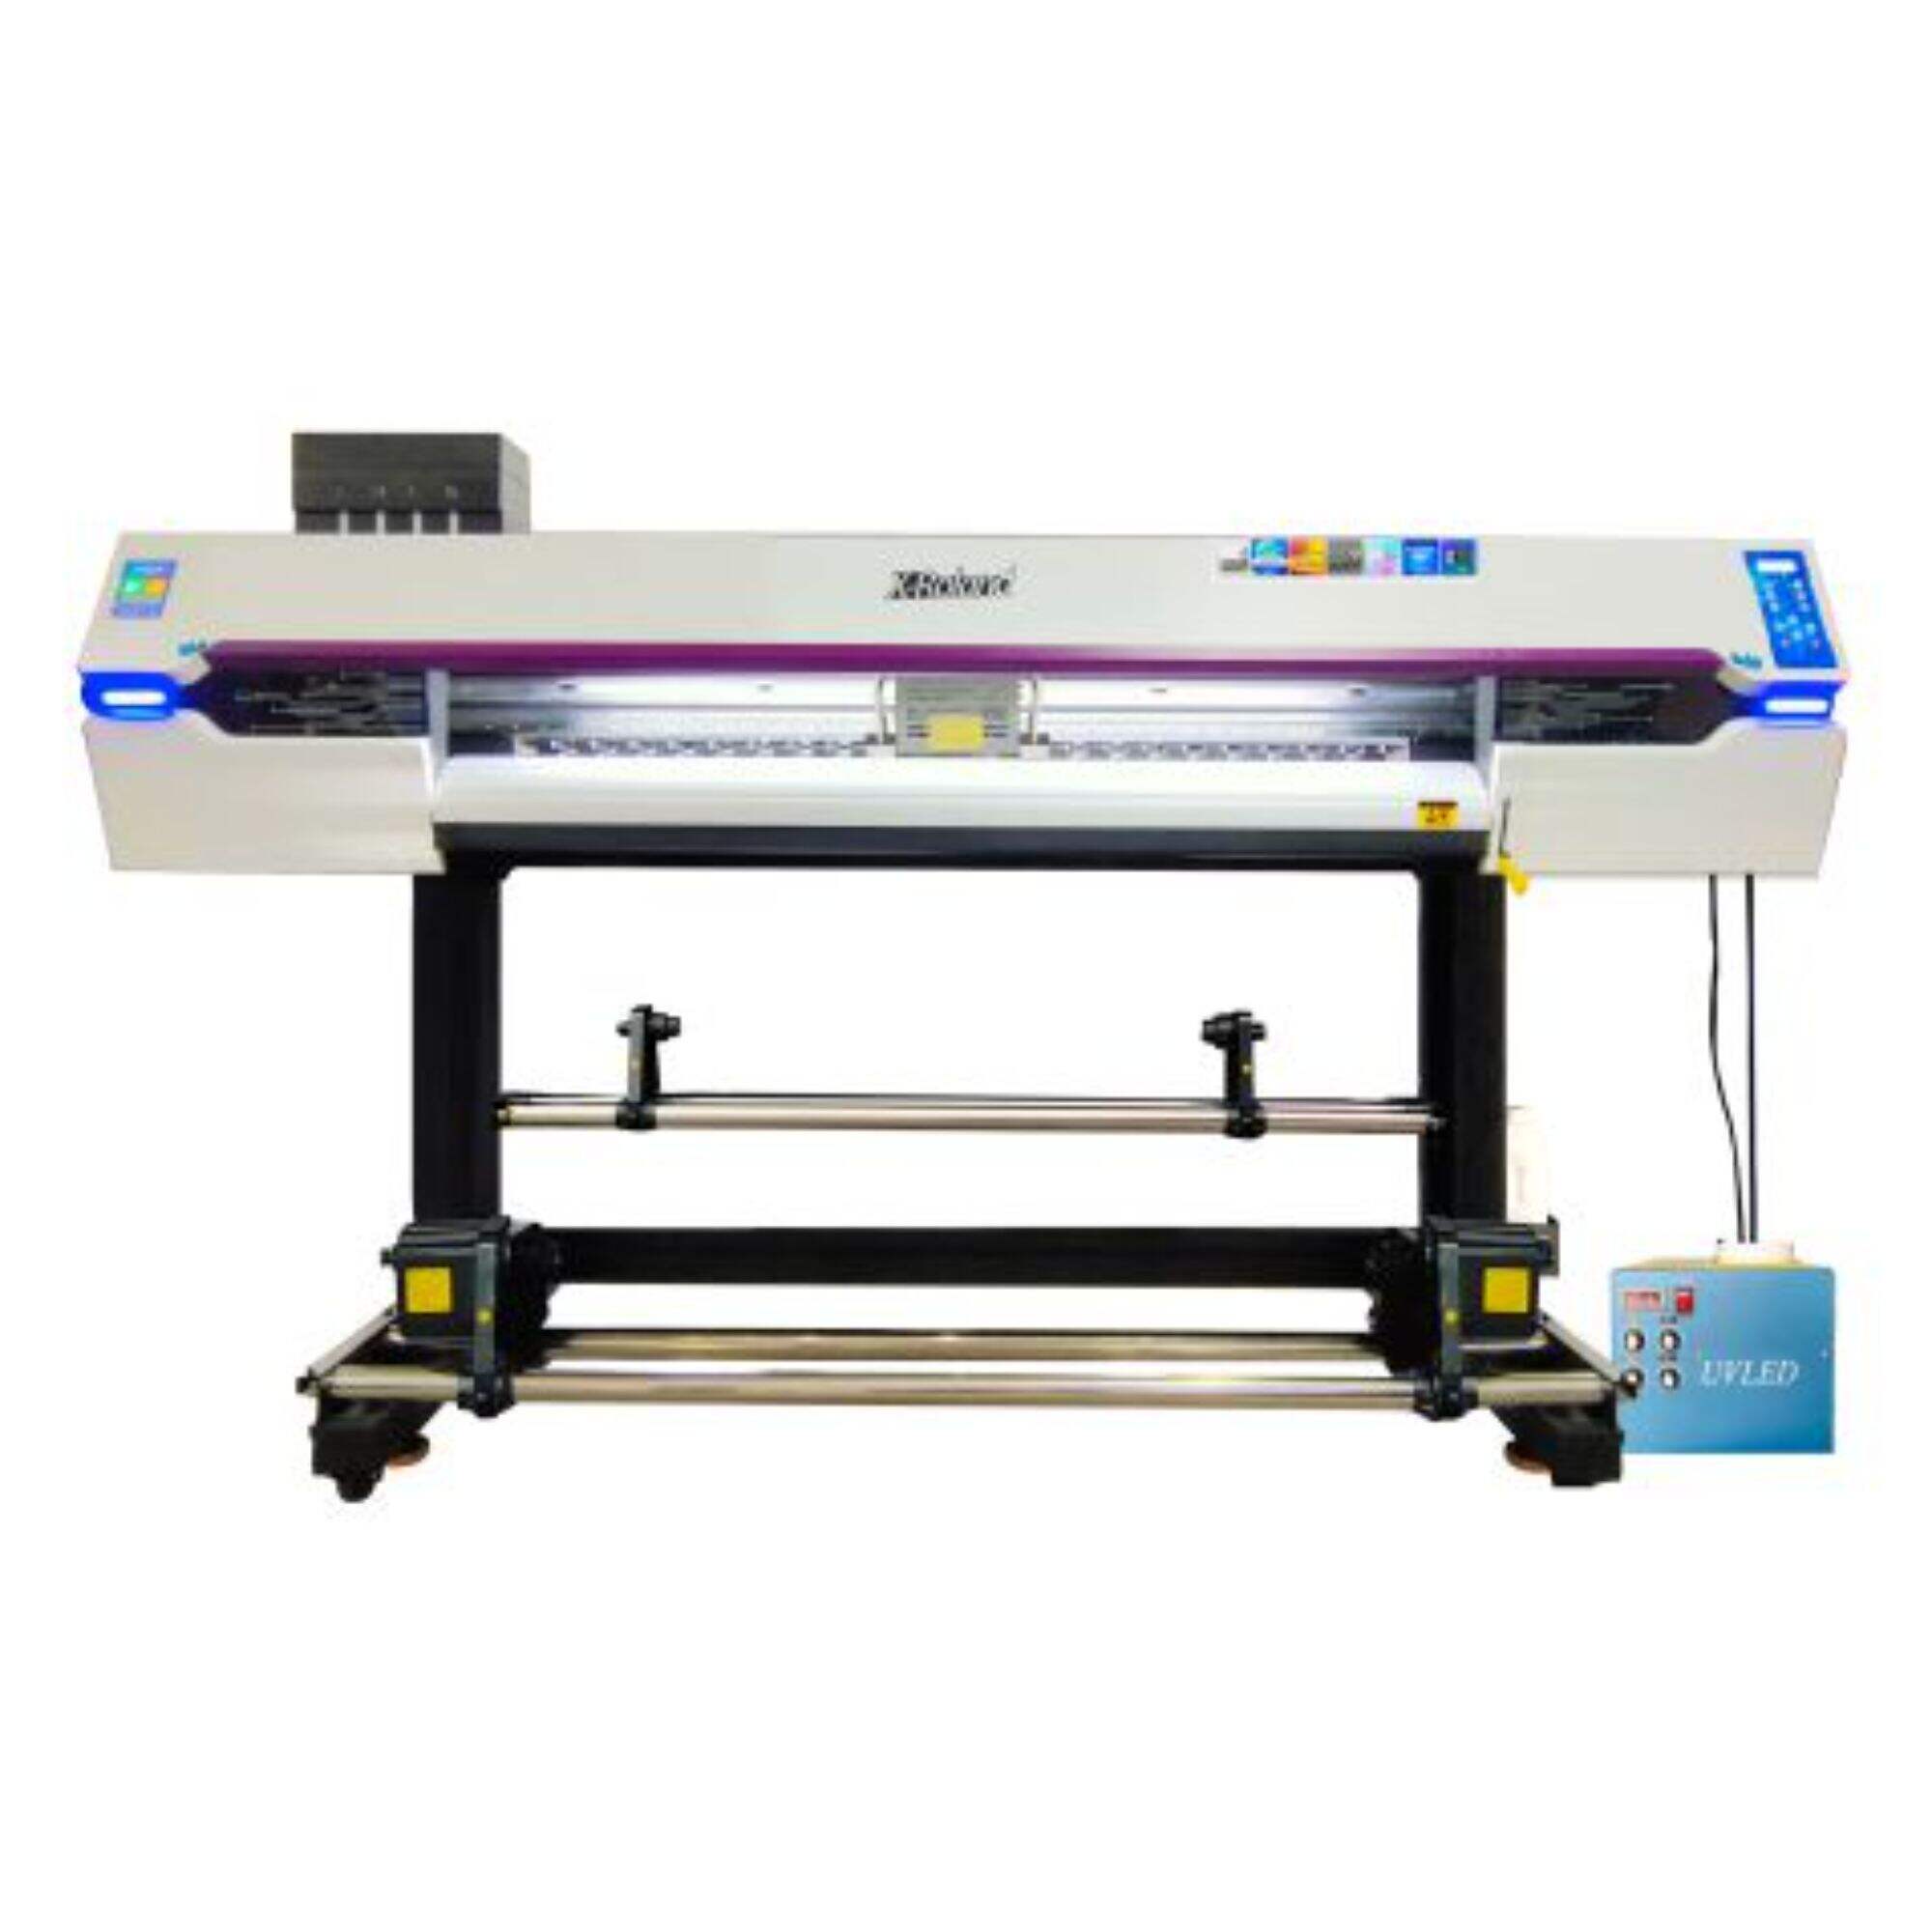 XL-1804F UV printer